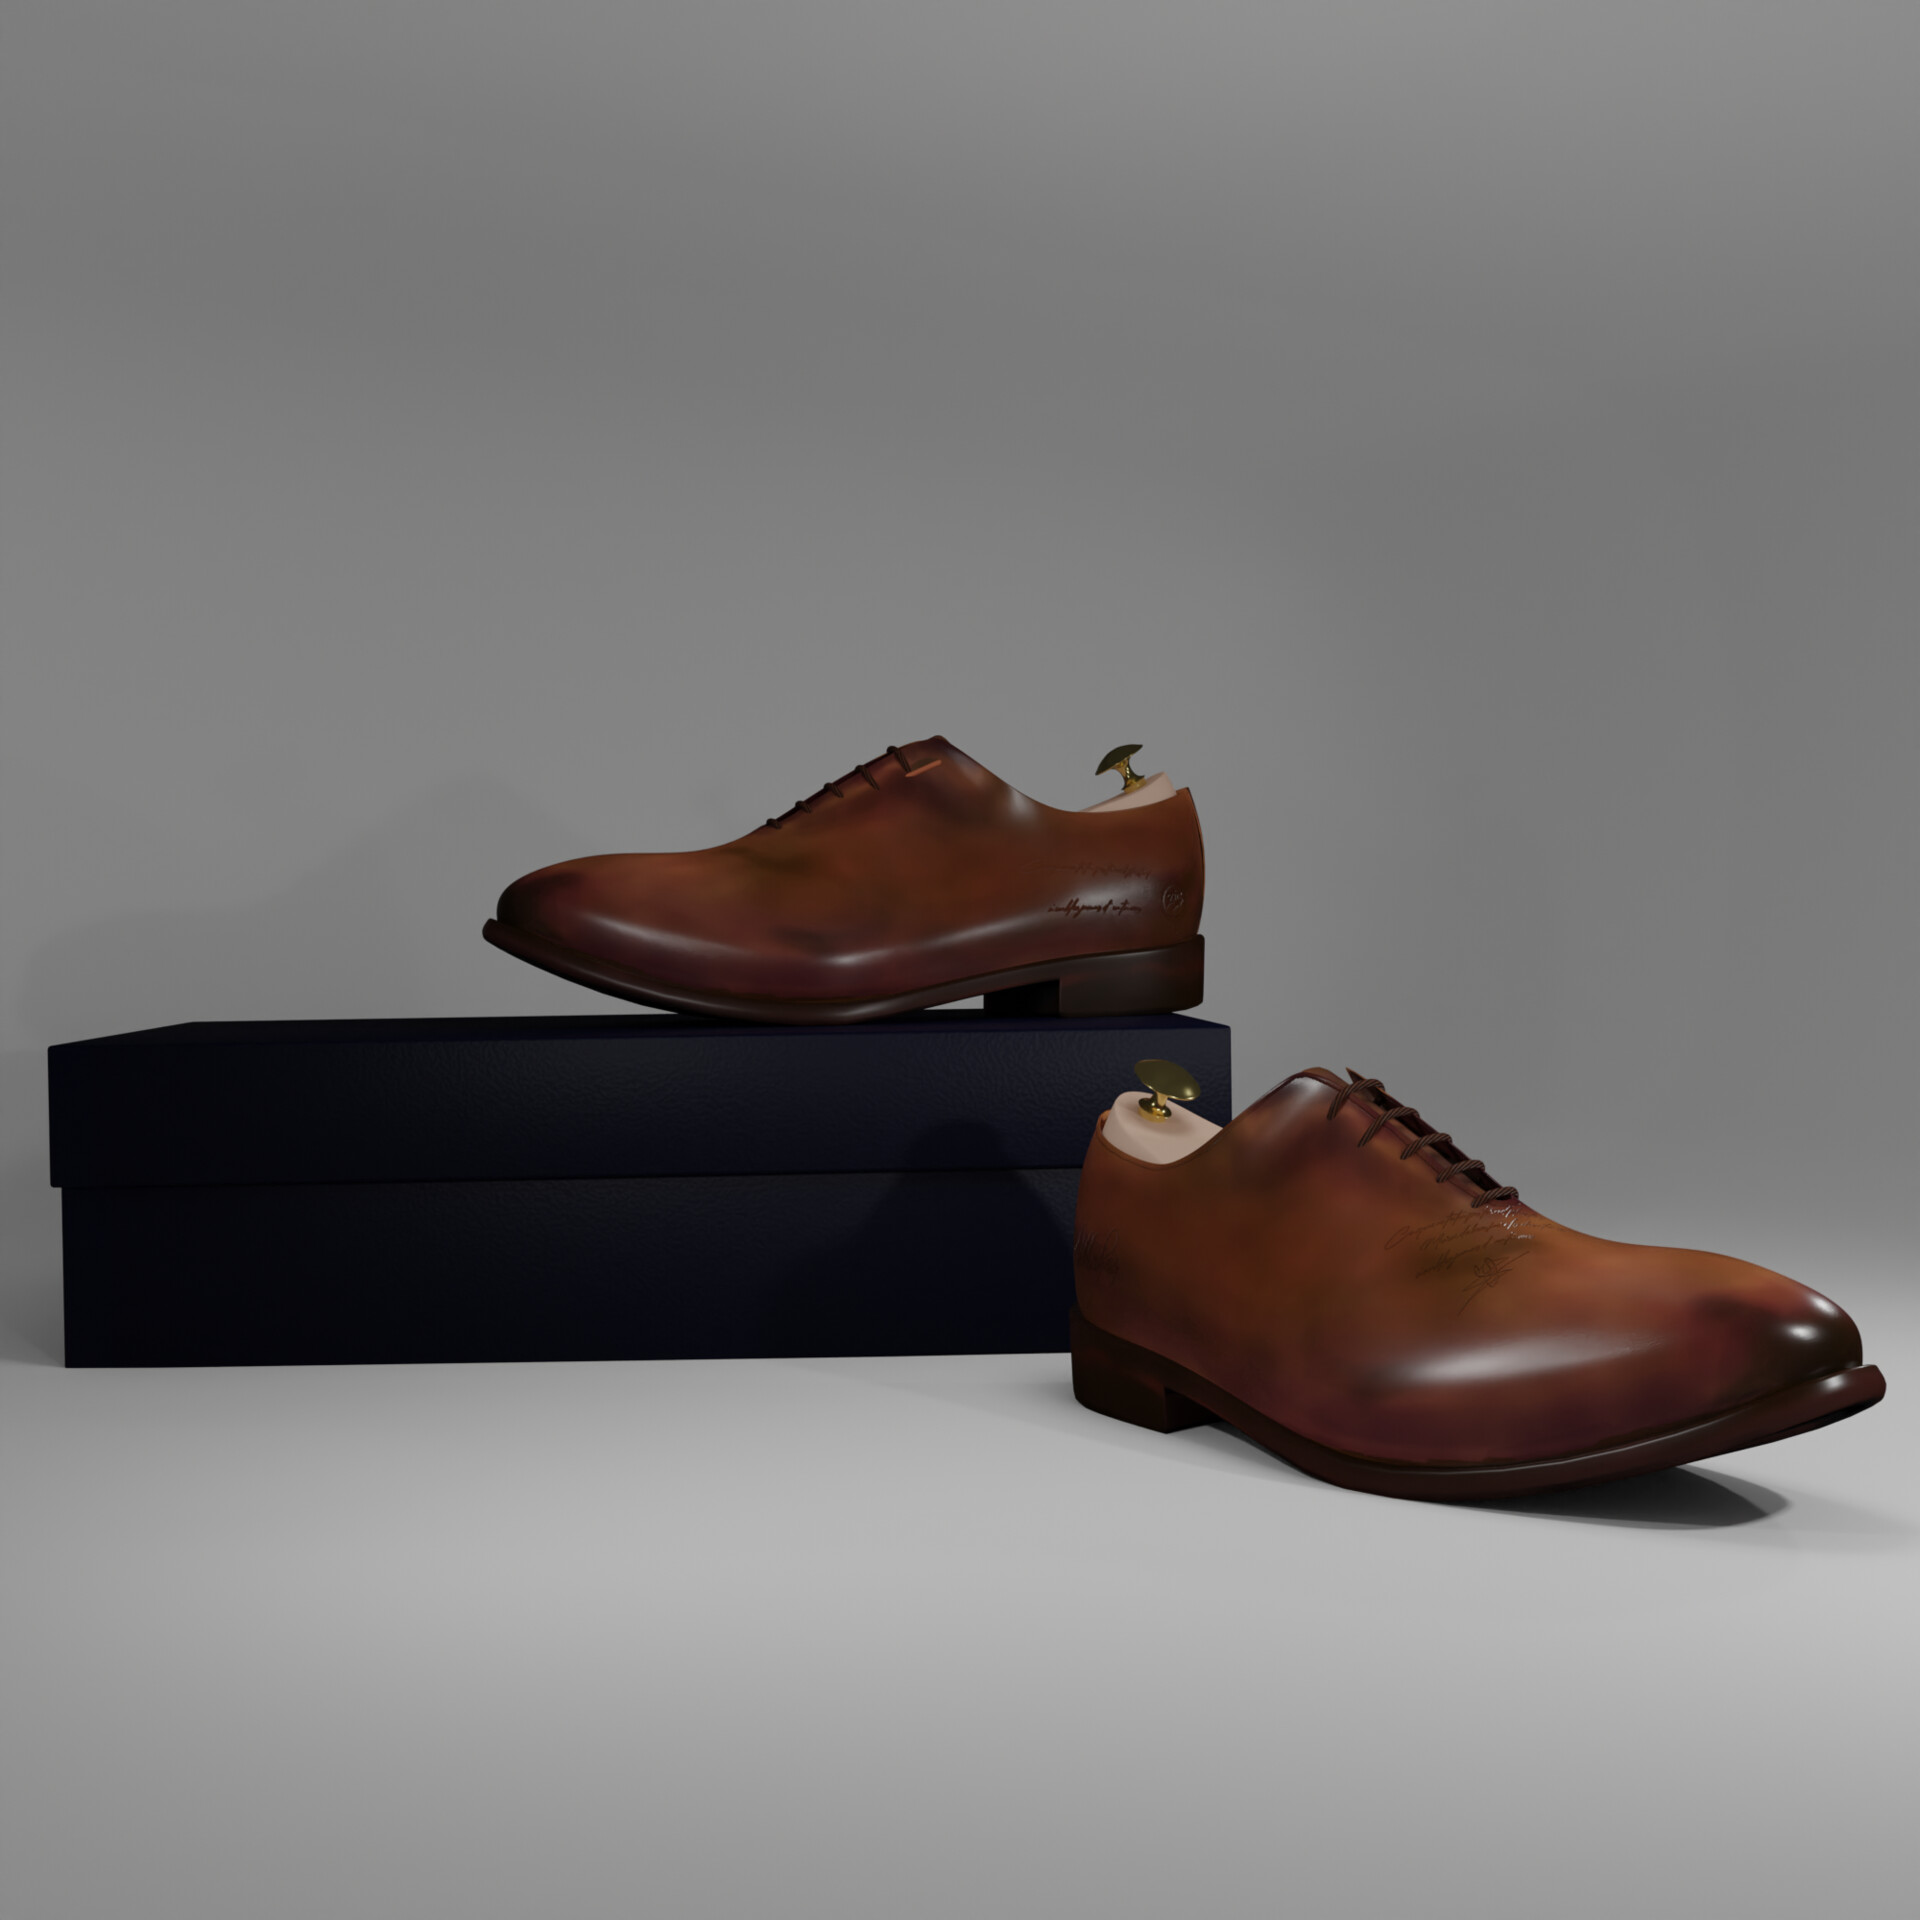 ArtStation - Modeling shoes with Blender 2.93